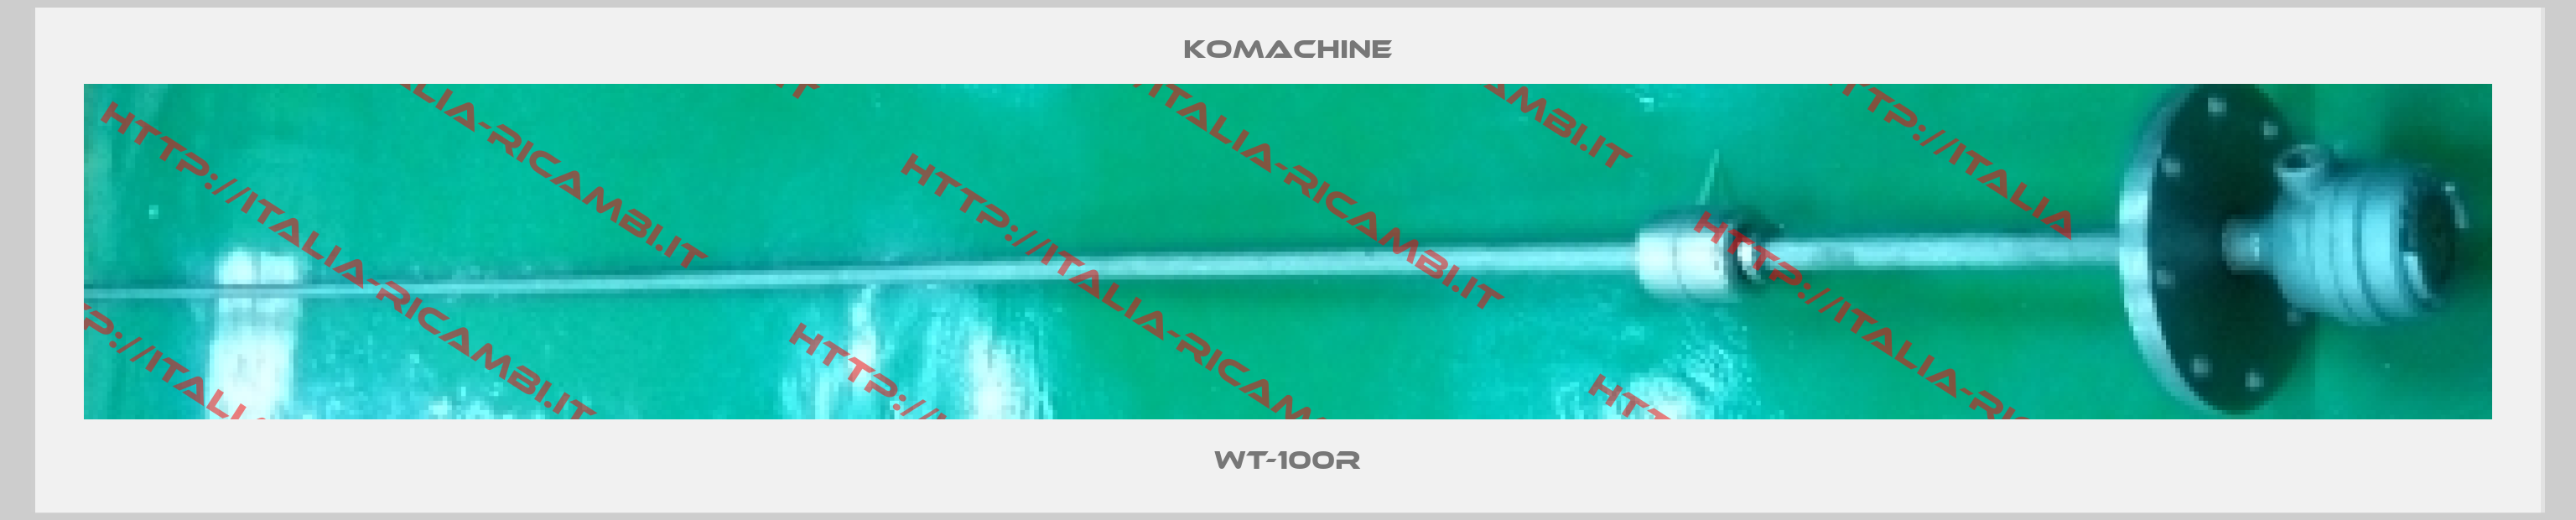 Komachine-WT-100R